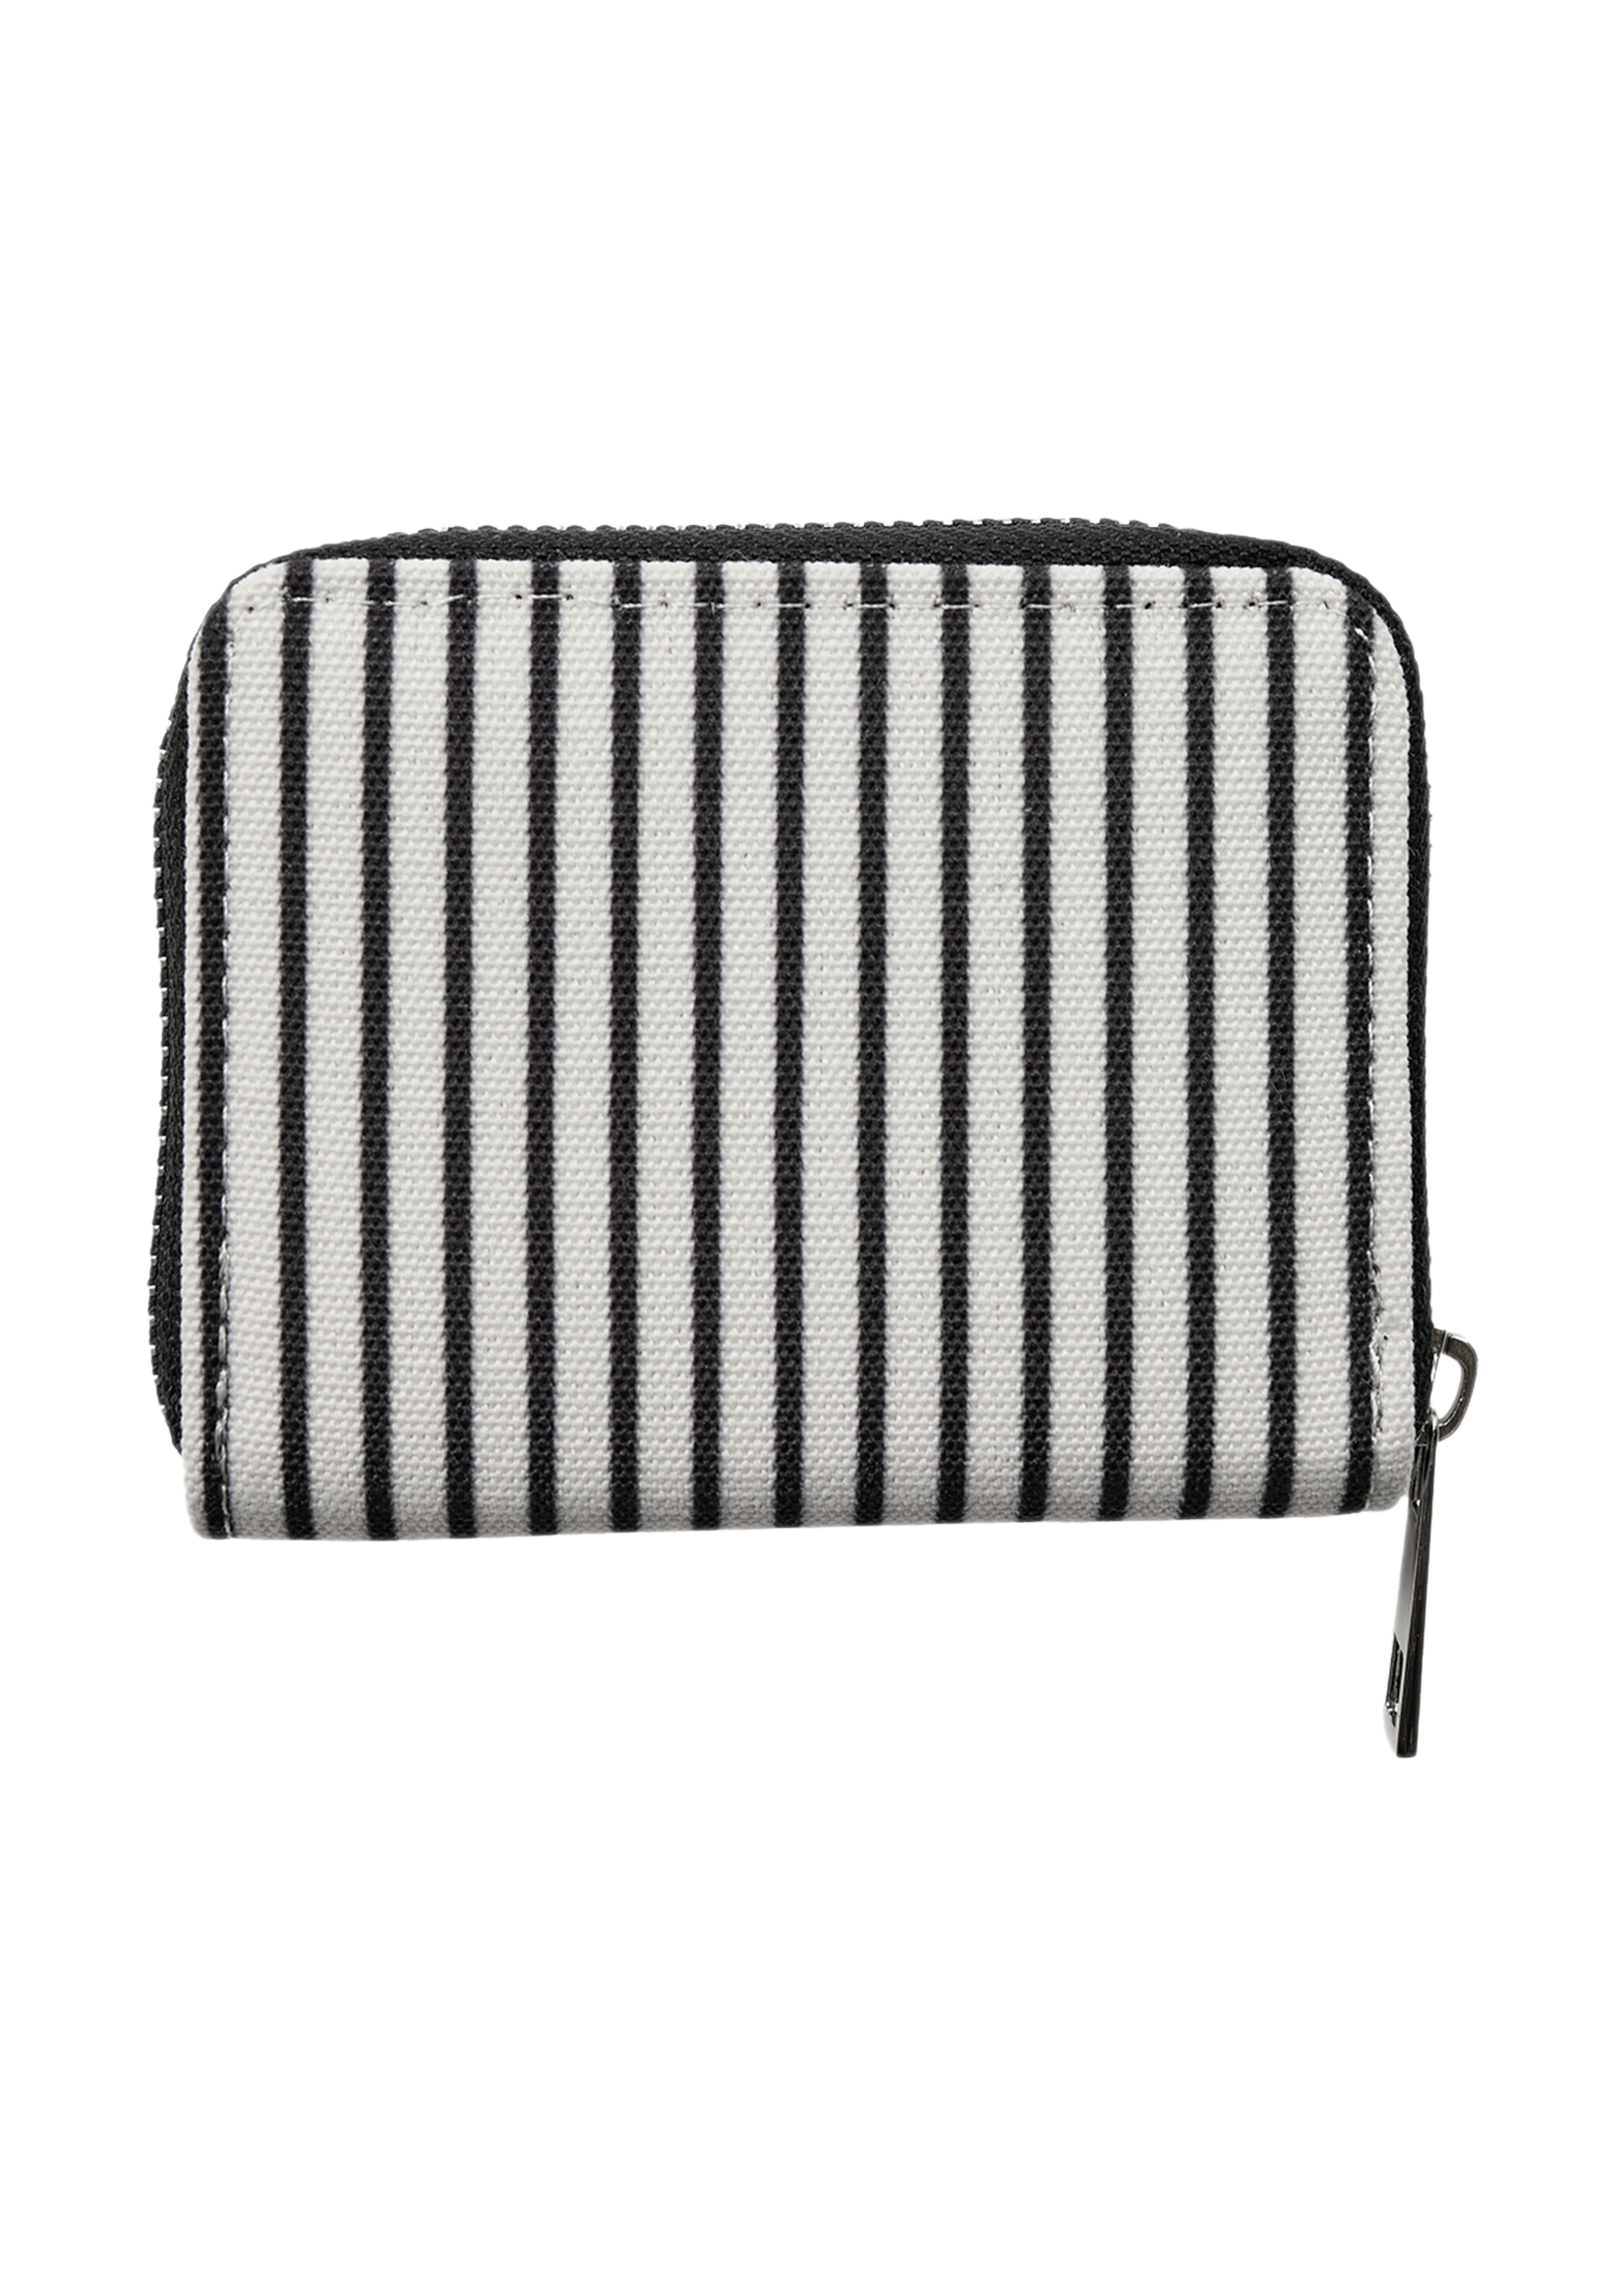 Sofie Schnoor Wallet white black striped